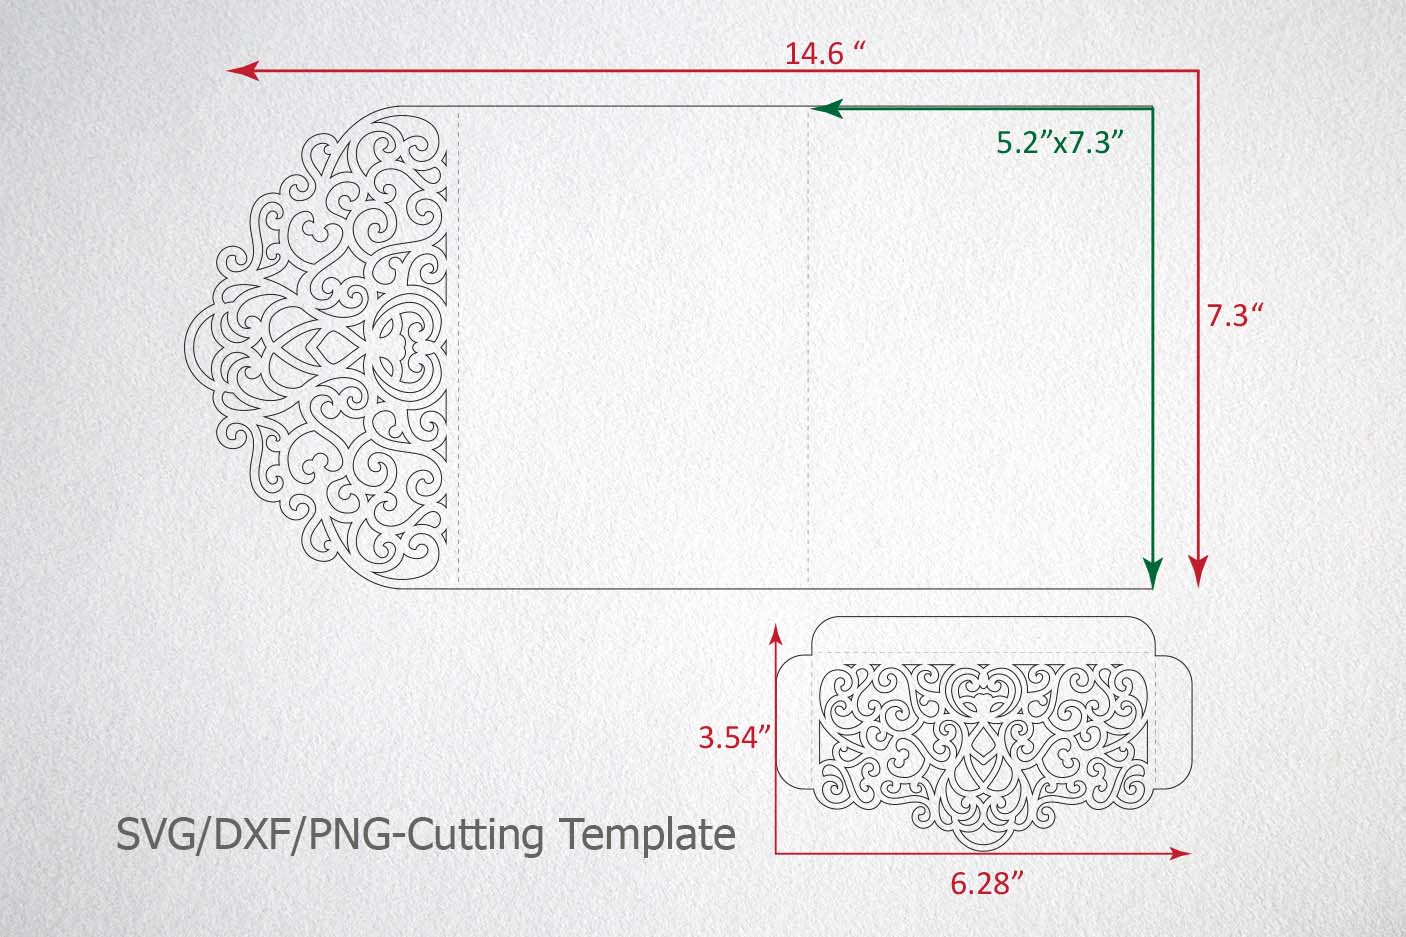 Download Tri Fold Wedding Invitation Pocket Envelope SVG DXF Template